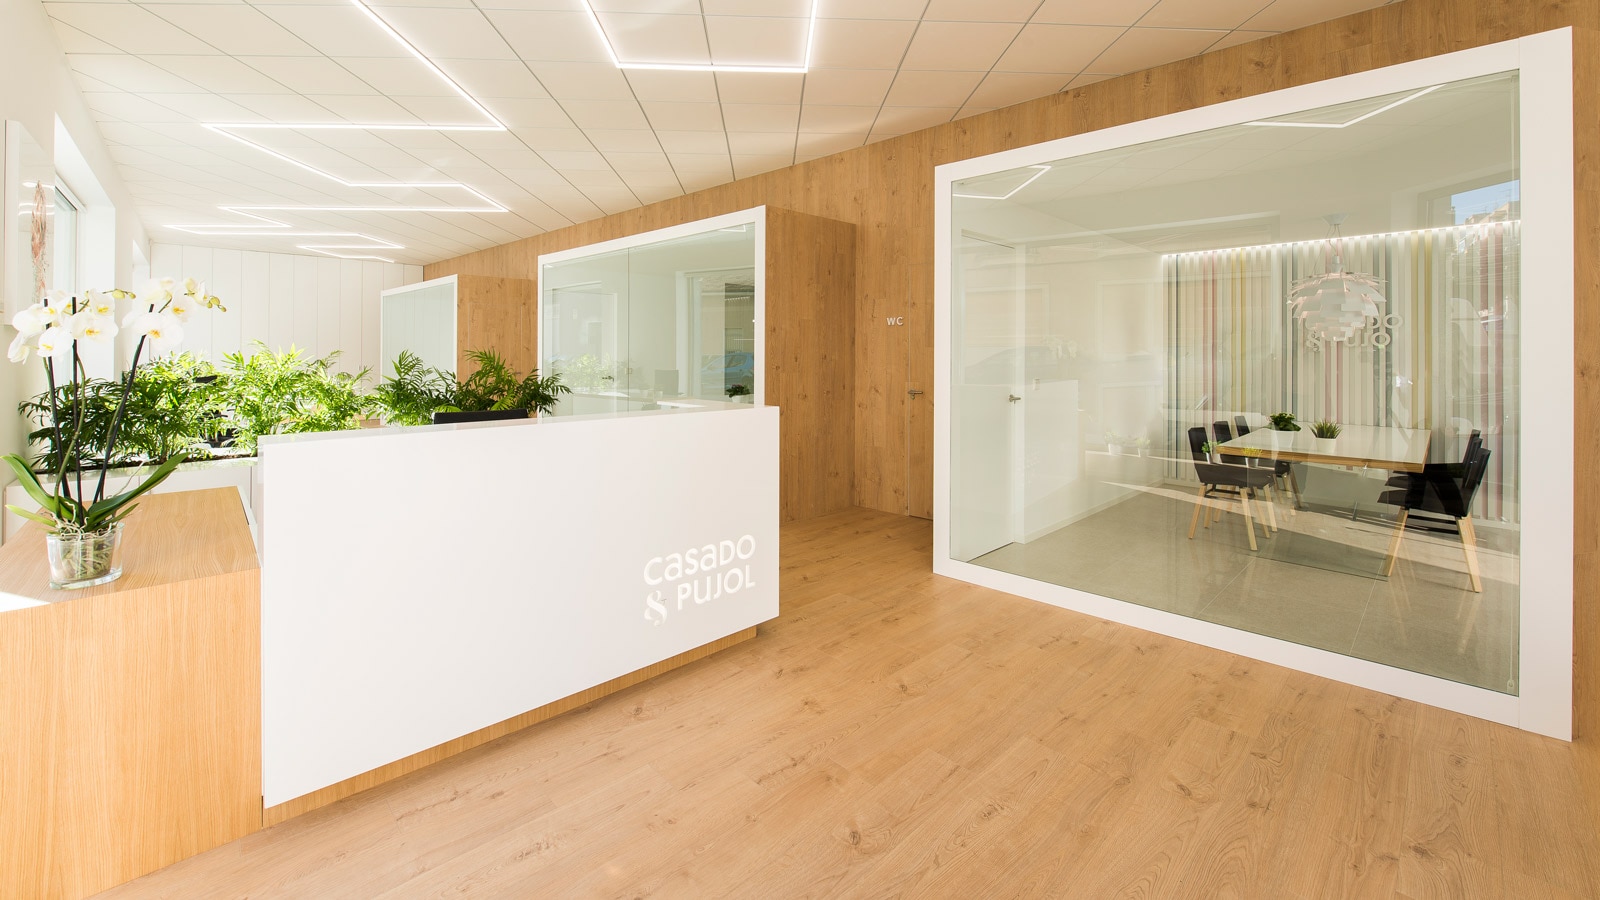 PORCELANOSA Groupe Projects : Le nouveau look des bureaux de Casado & Pujol dans le plus pur style Japandi